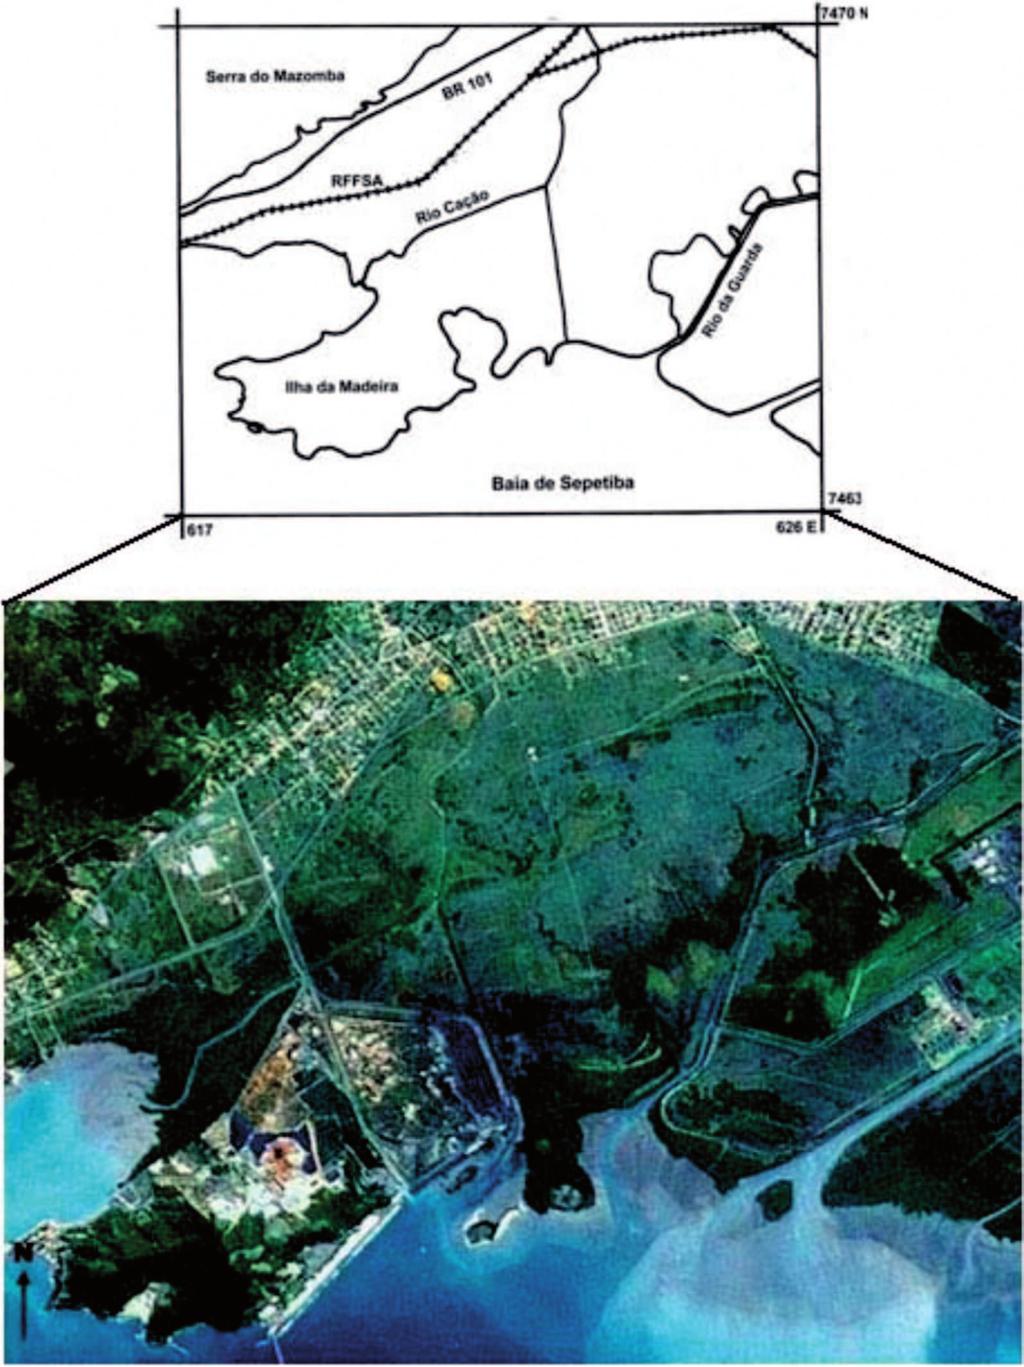 BAÍA DE SEPETIBA - ESTADO DA ARTE 1. INTRODUÇÃO Entre as coordenadas (616/626 E; 7463/7470 N UTM) (Figura 1), encontra-se inserida na planície costeira da baía de Sepetiba no município de Itaguaí.